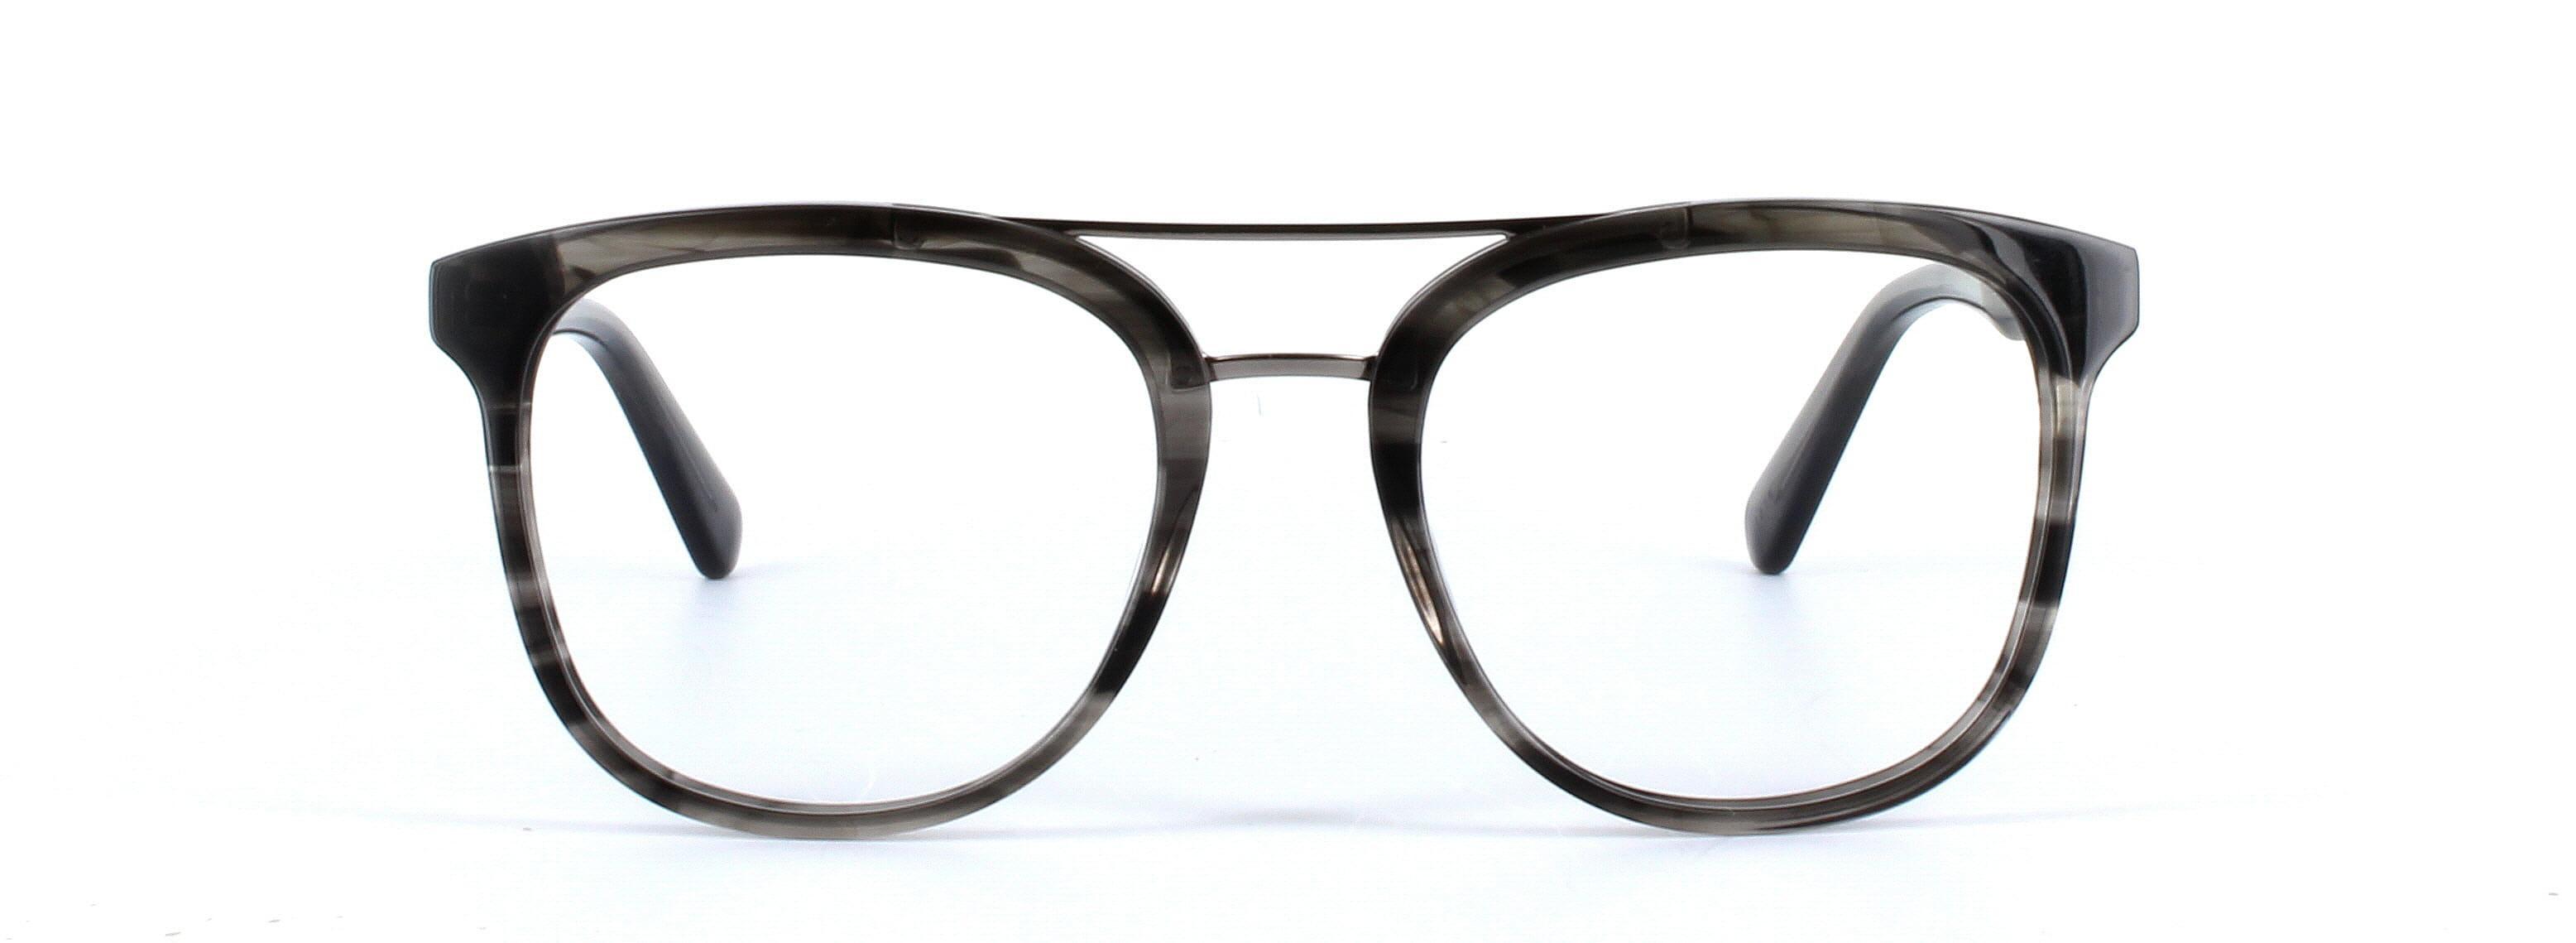 GUESS (GU1953-020) Grey Full Rim Square Acetate Glasses - Image View 5